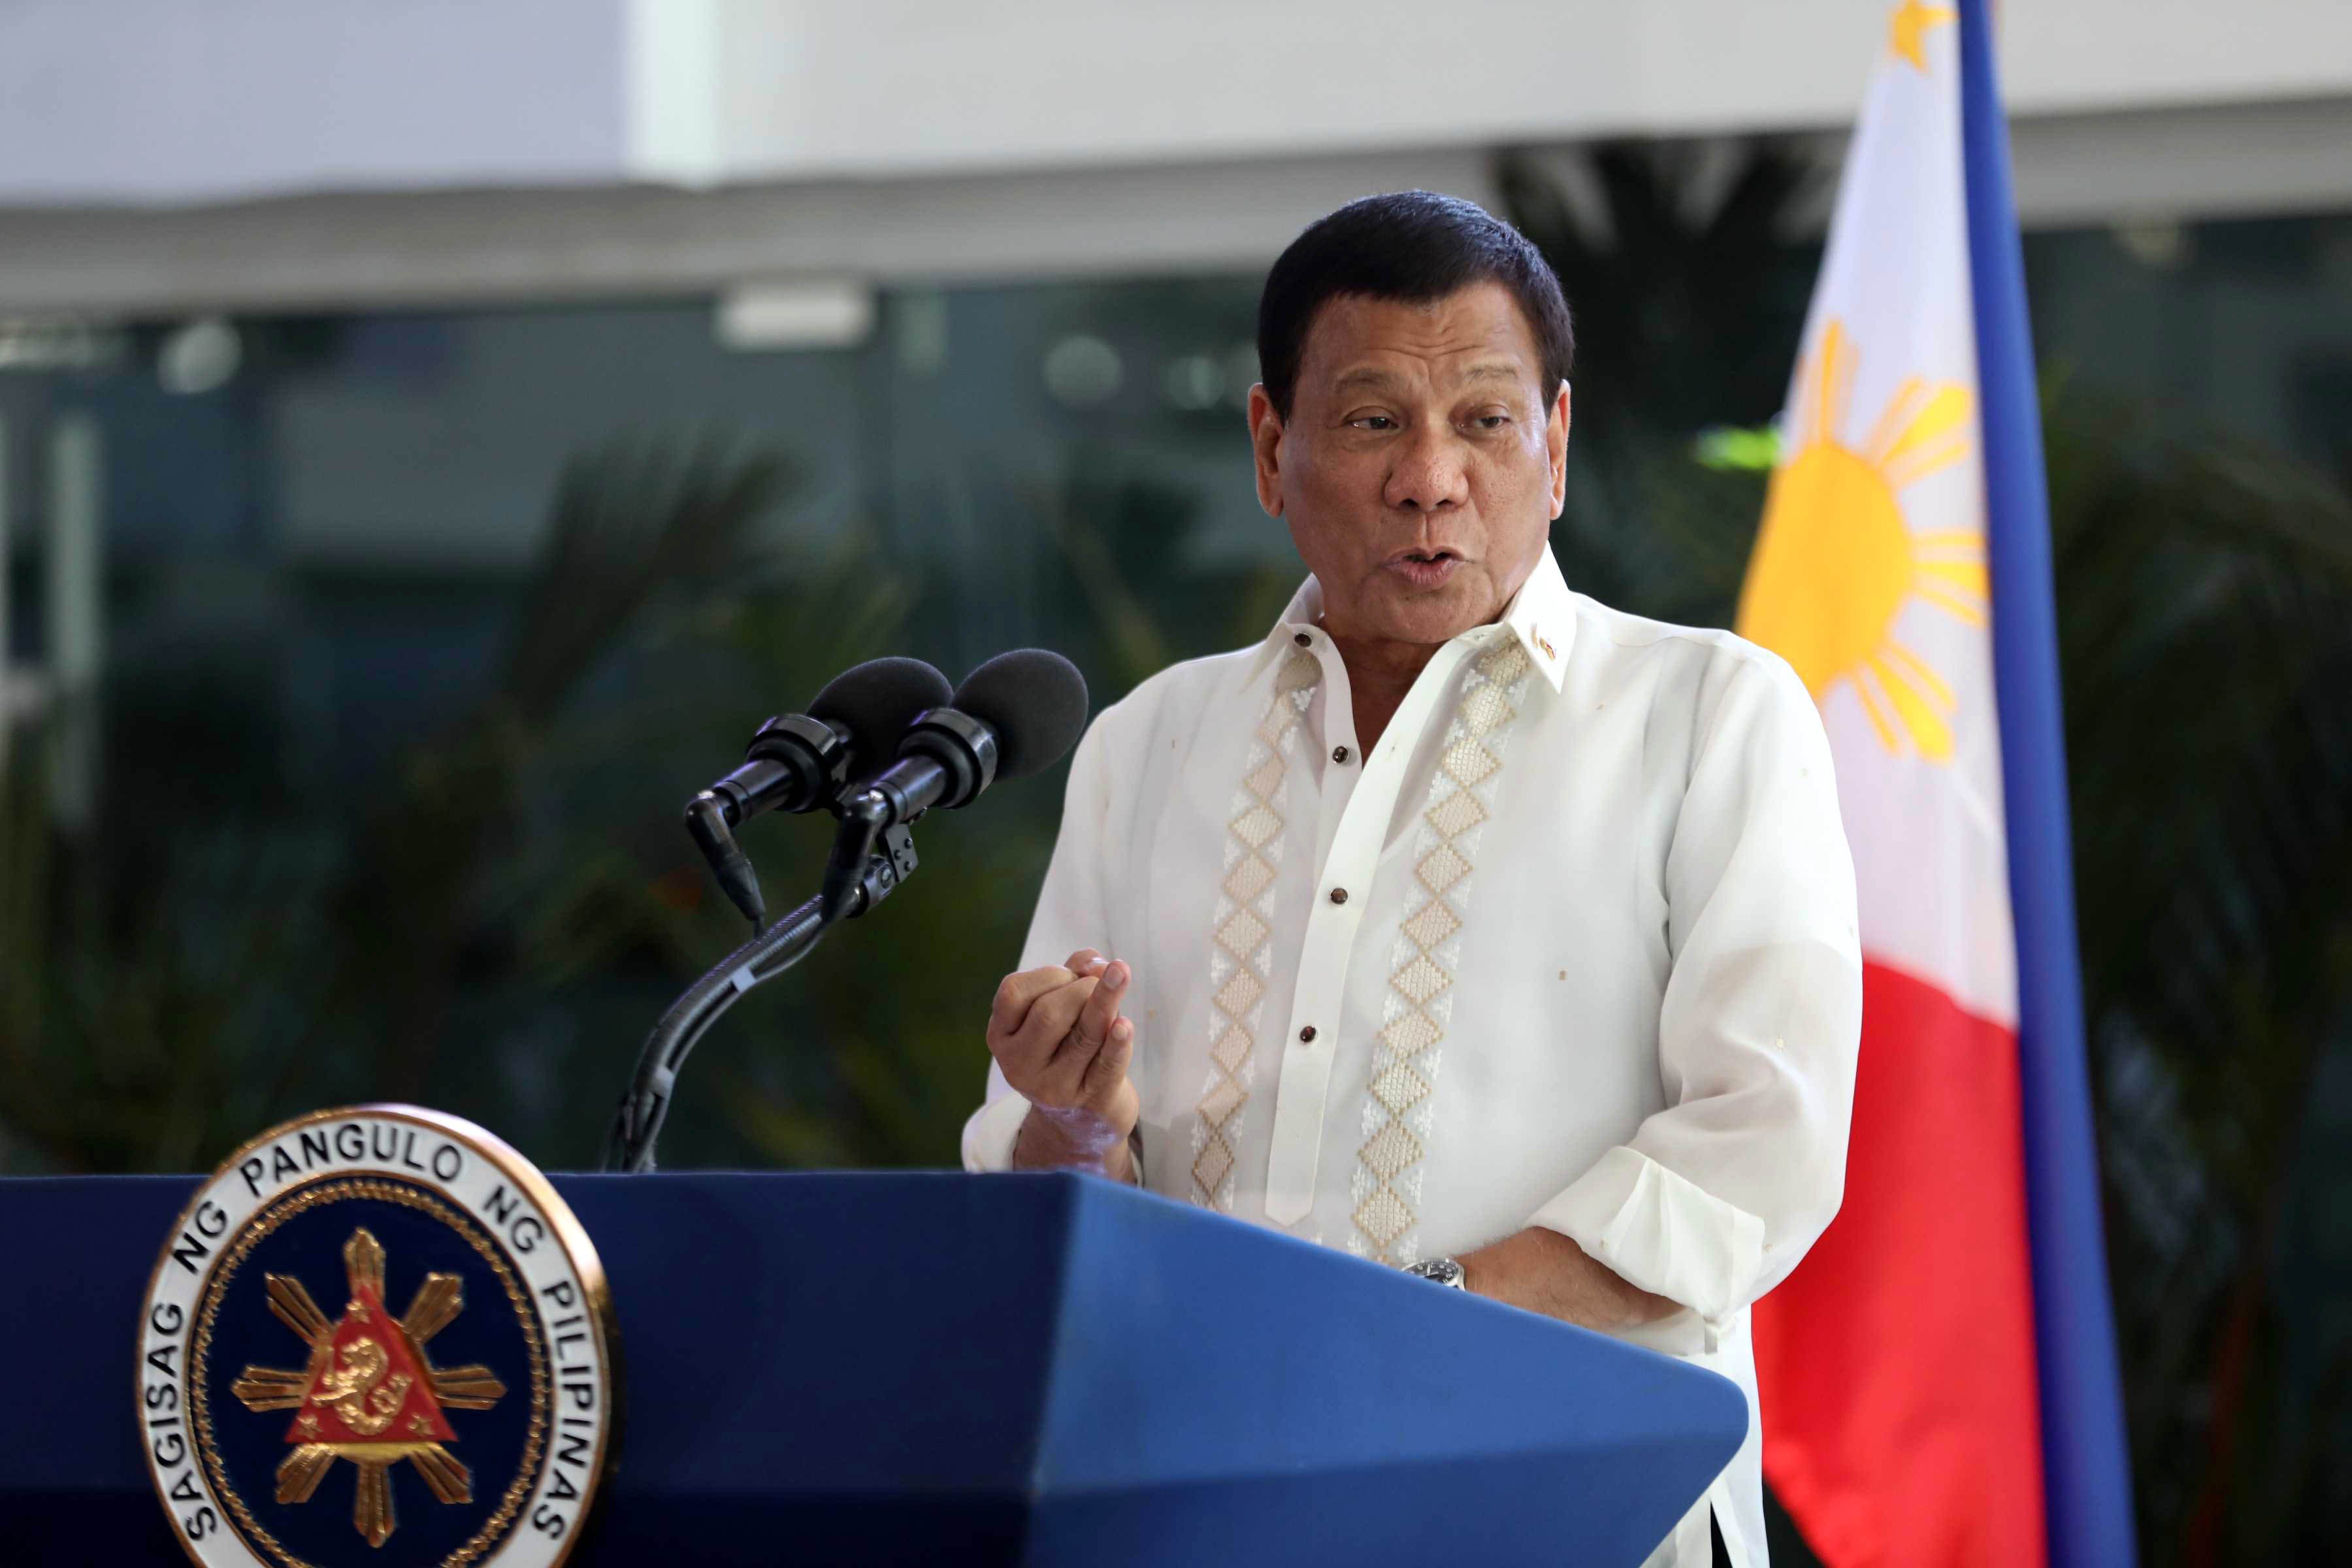 Pres. Duterte to visit Cambodia, HK, China